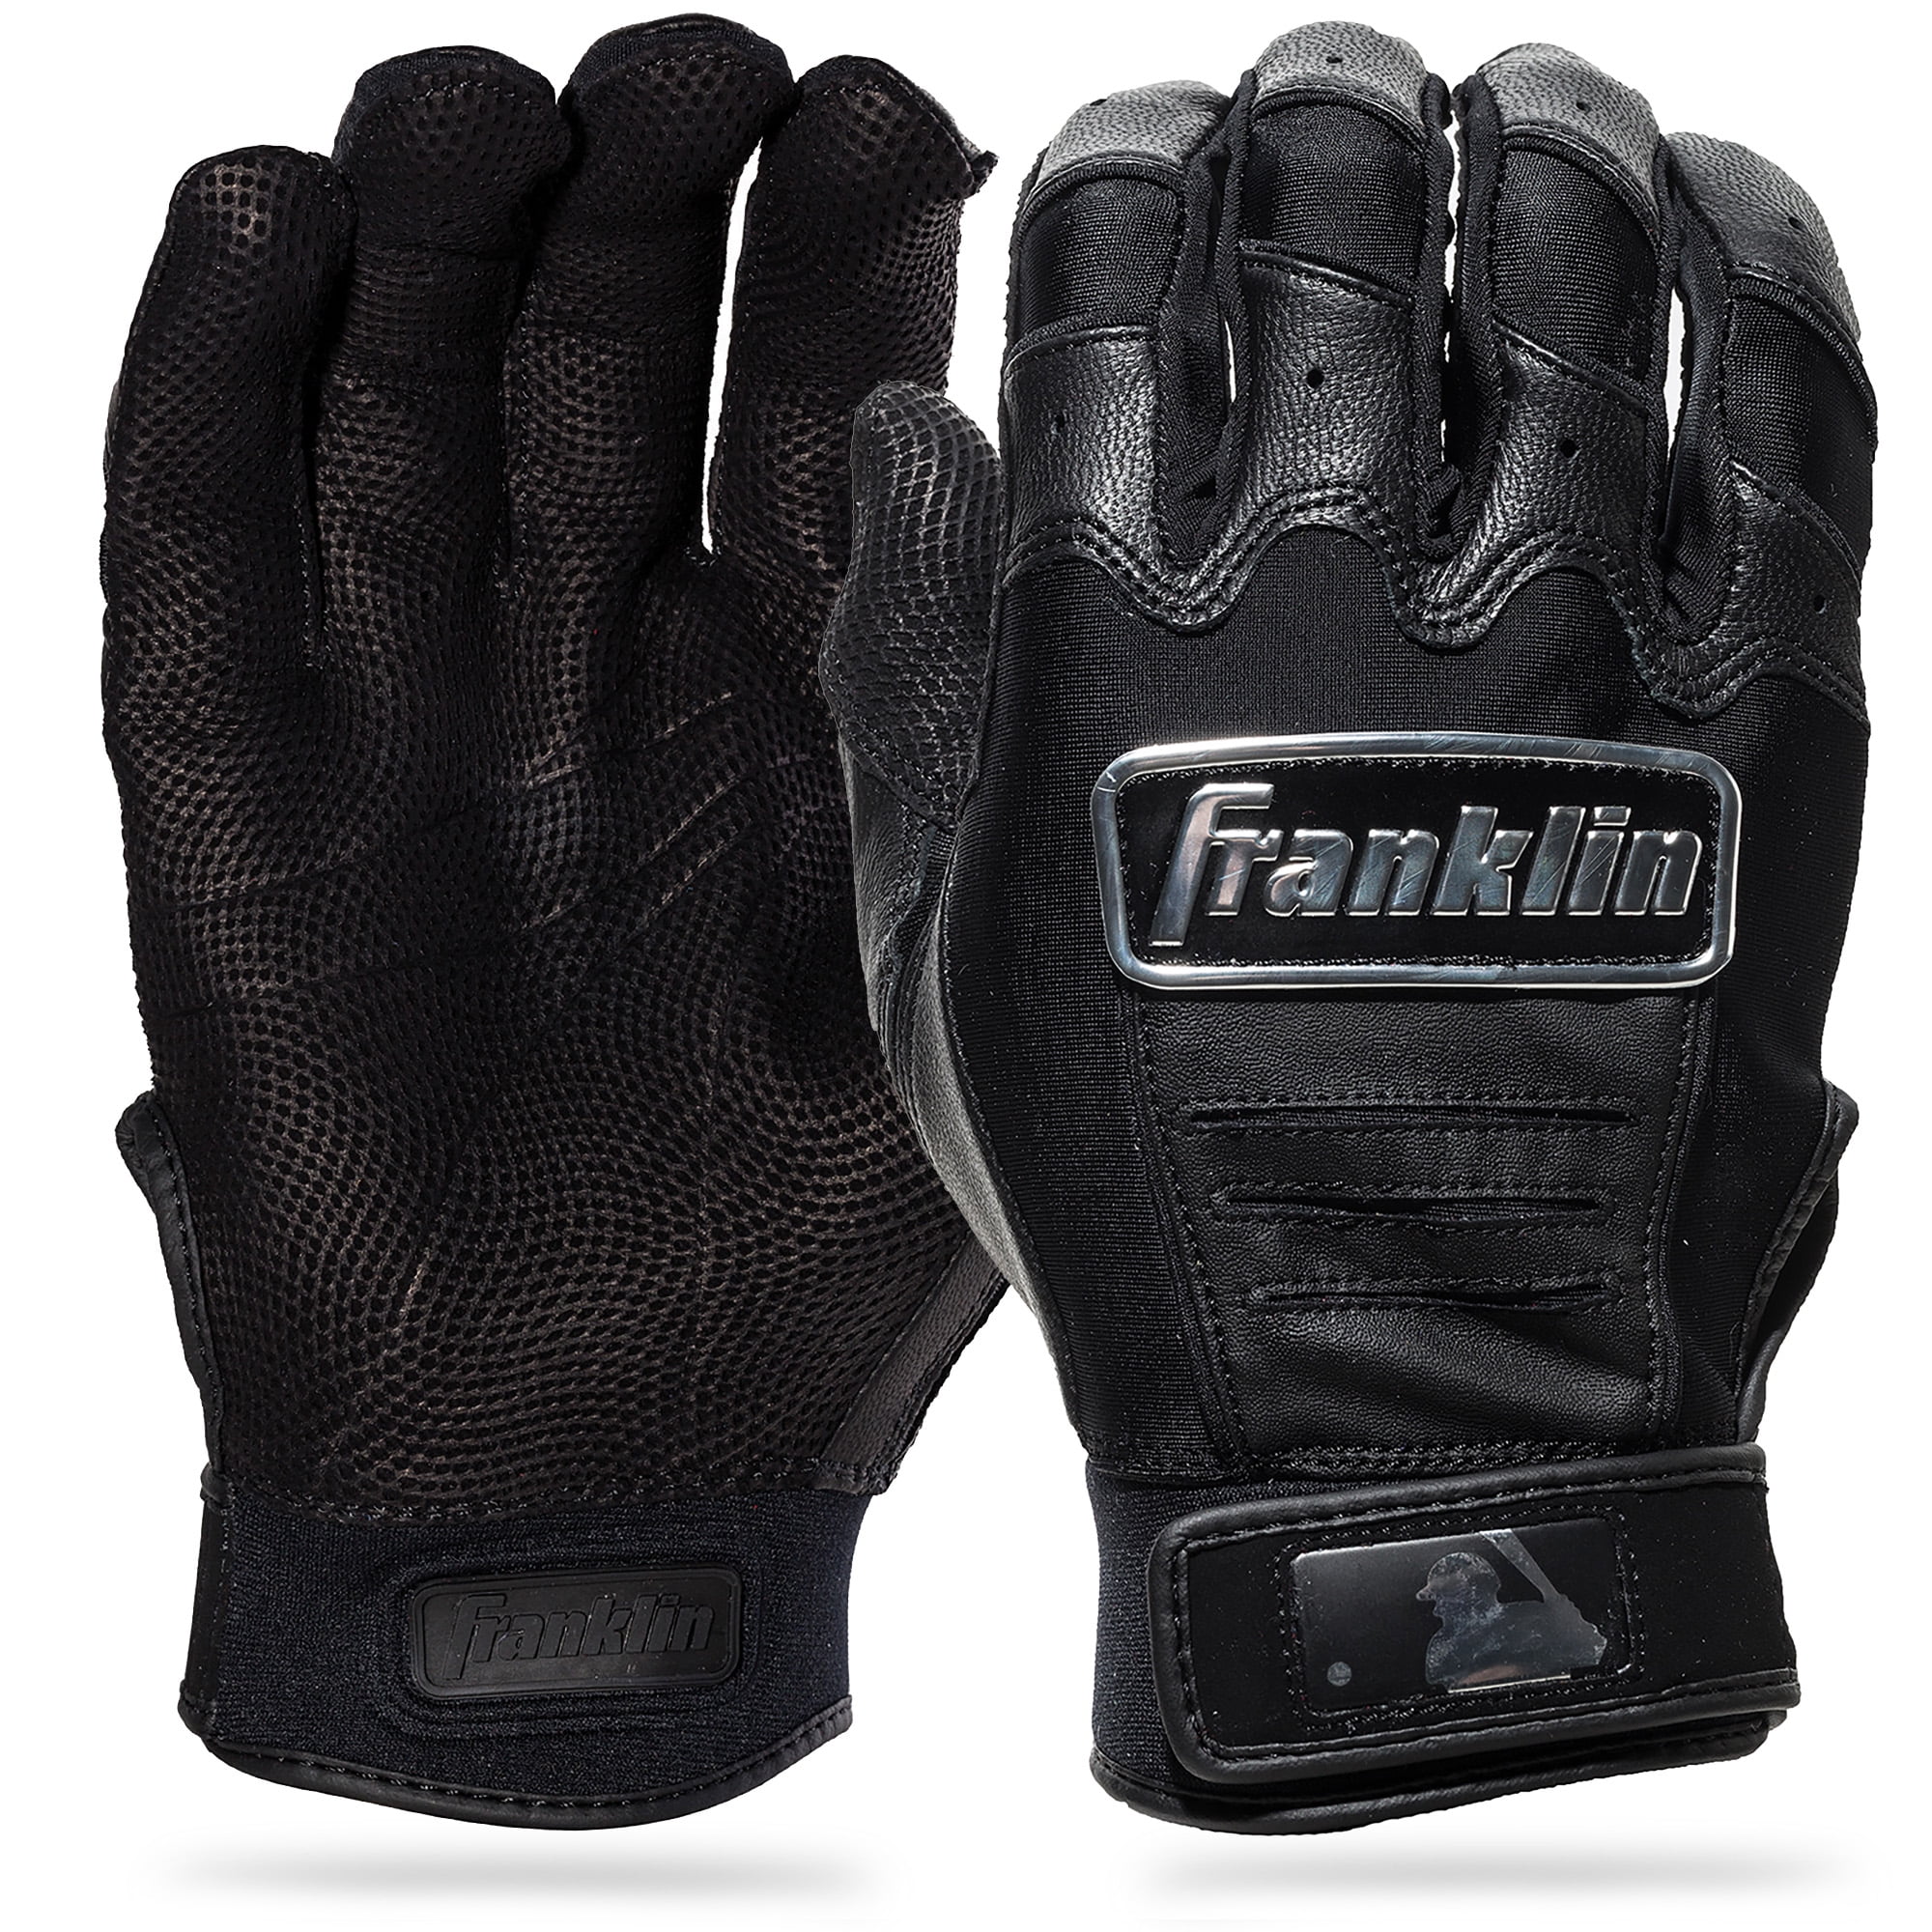 Franklin CFX Pro Adult Batting Gloves - Black